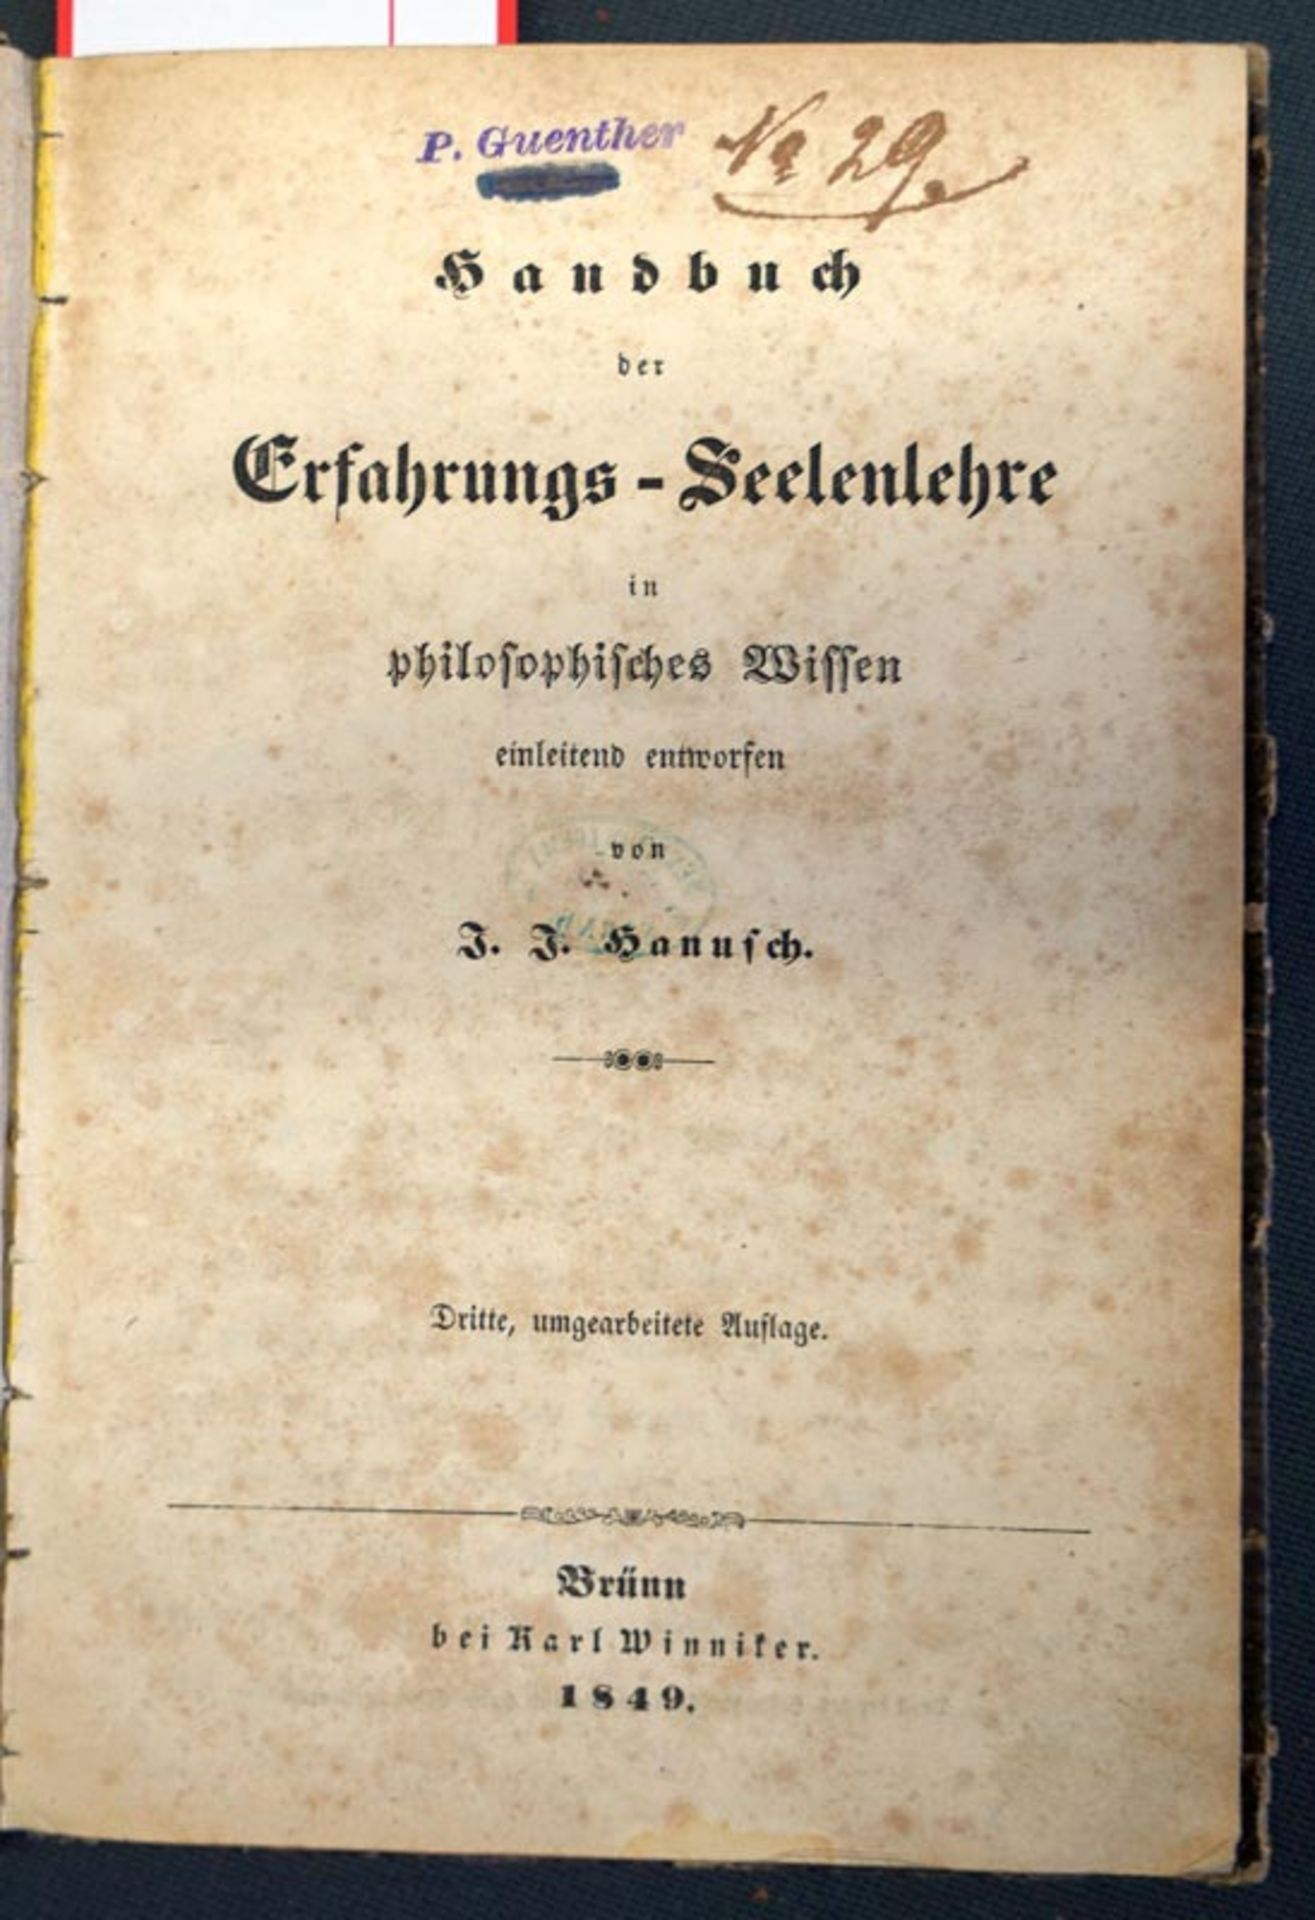 Hanus, Ignác Jan: Handbuch der Erfahrungs-Seelenlehre in philosophisches Wissen einleitend